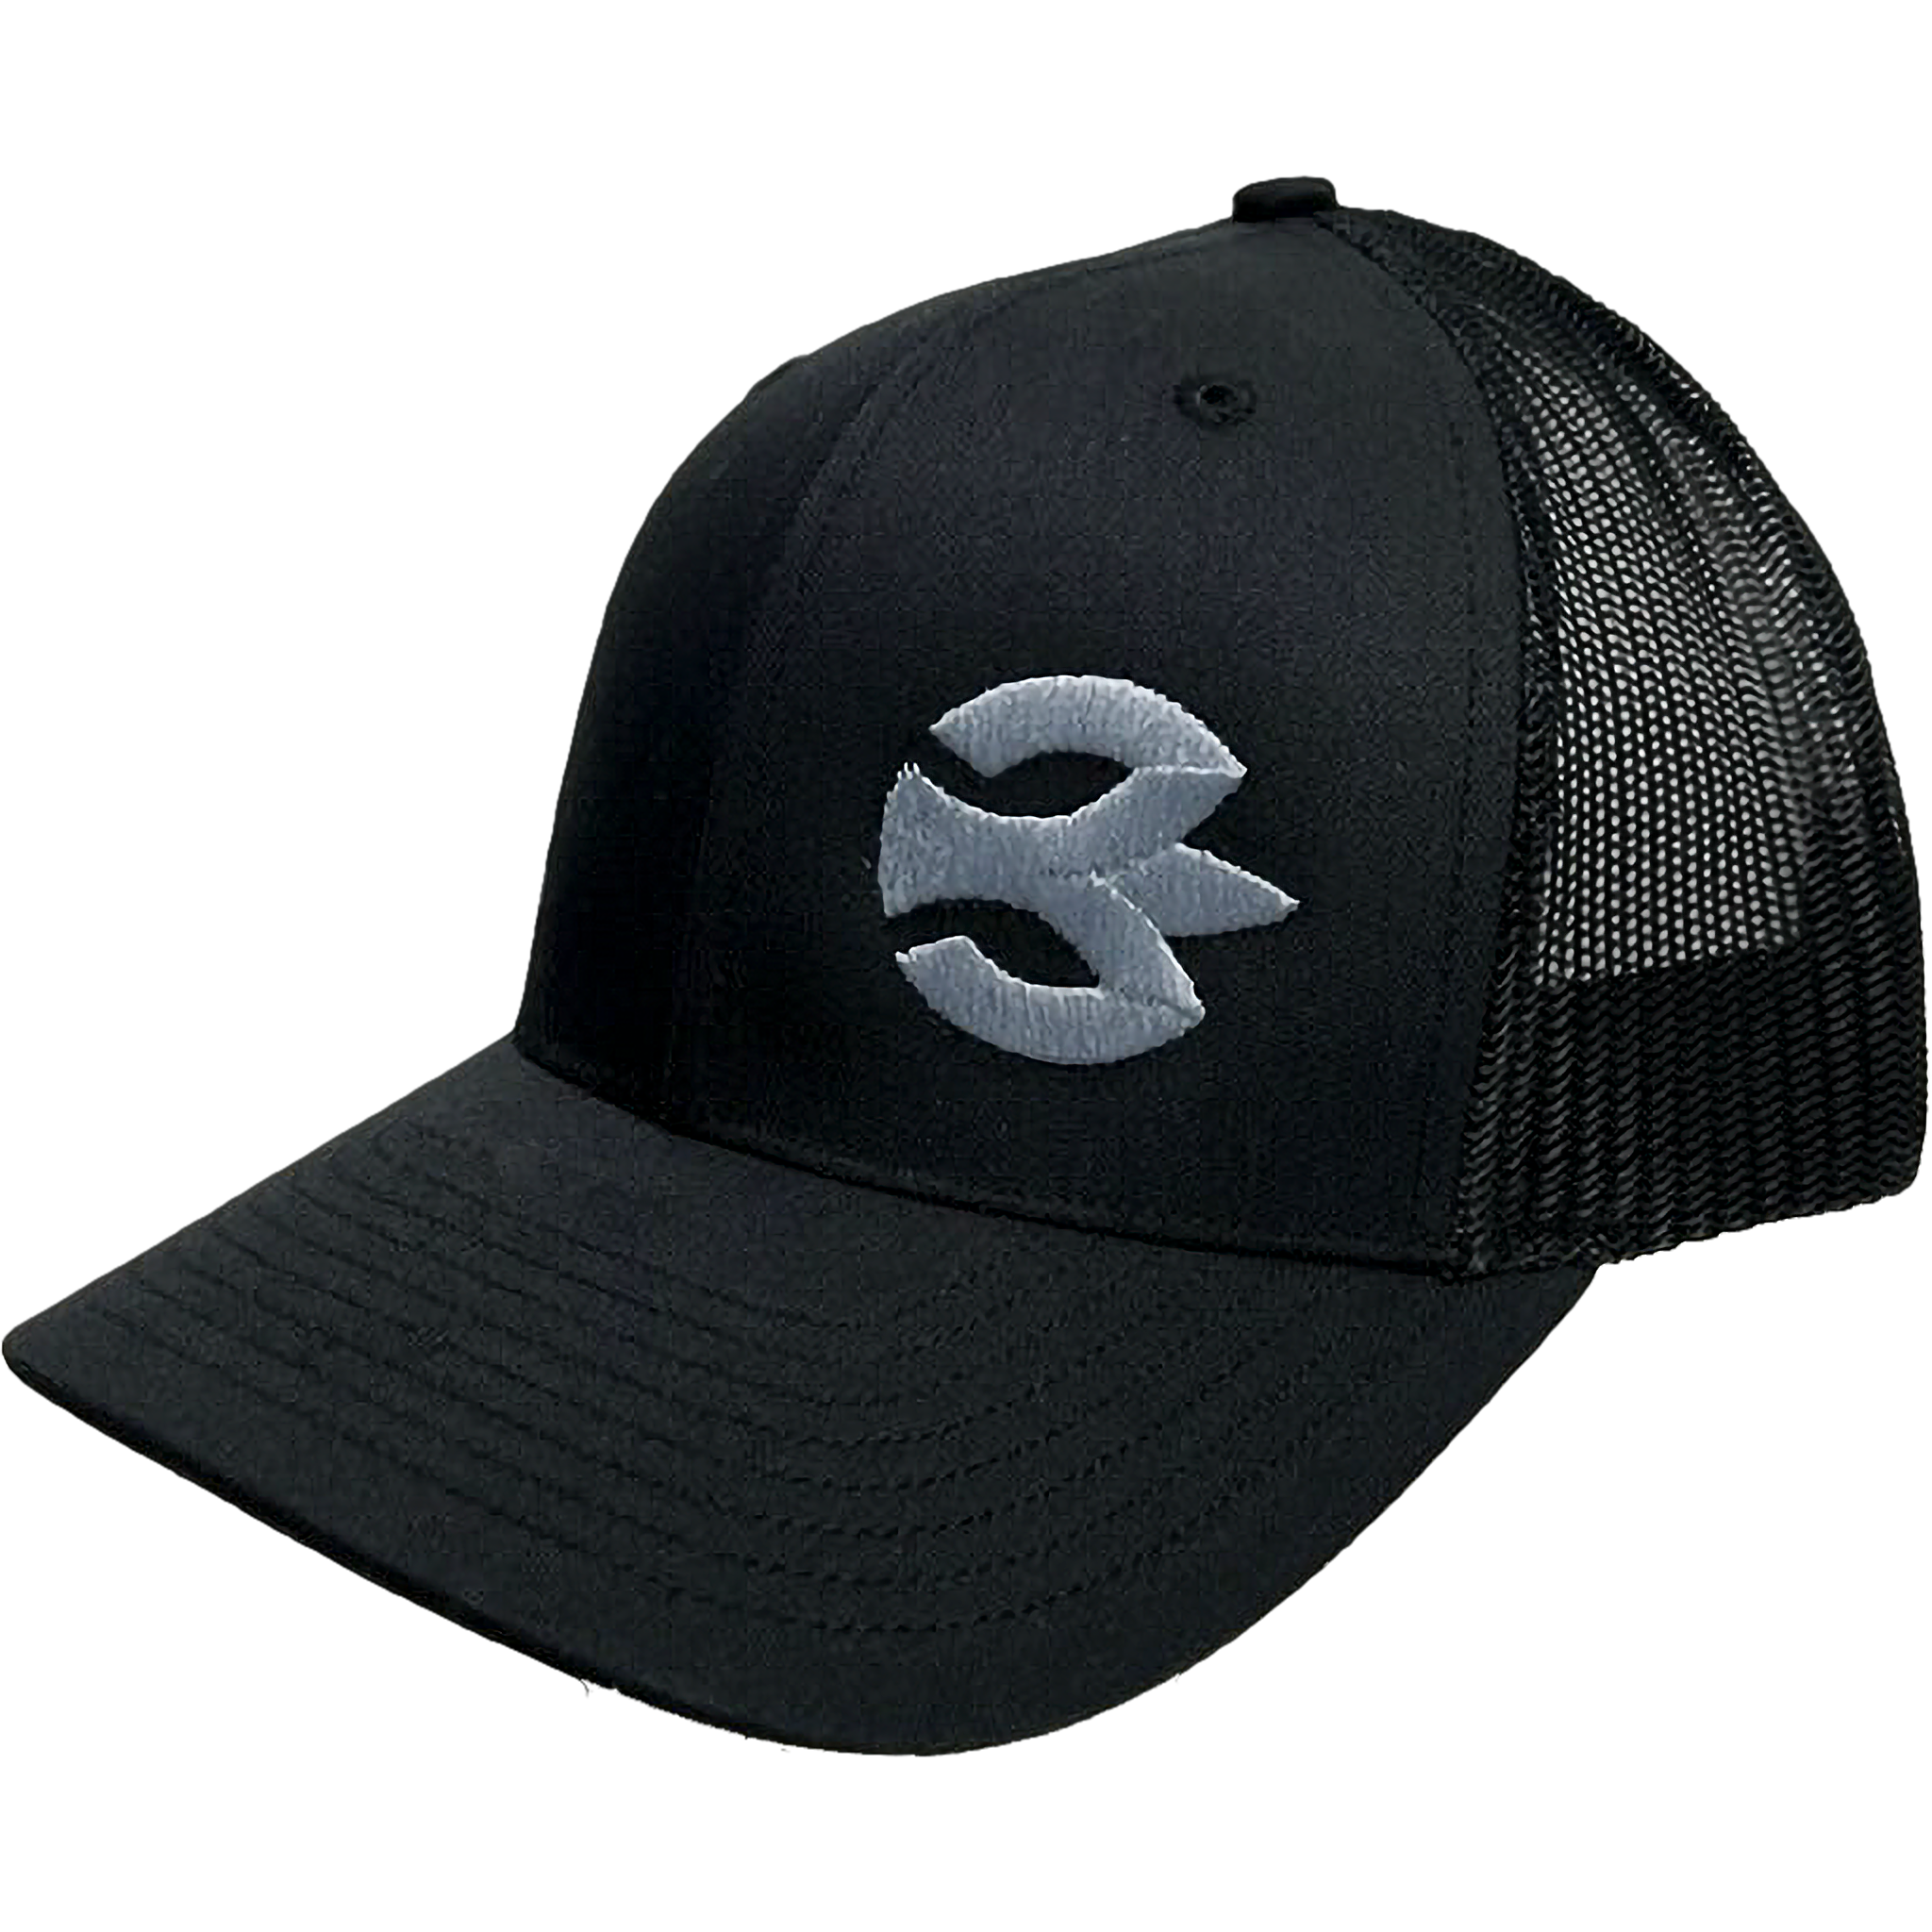 The Burnewiin Port Side Trucker Hat with logo on the hat-wearer left.